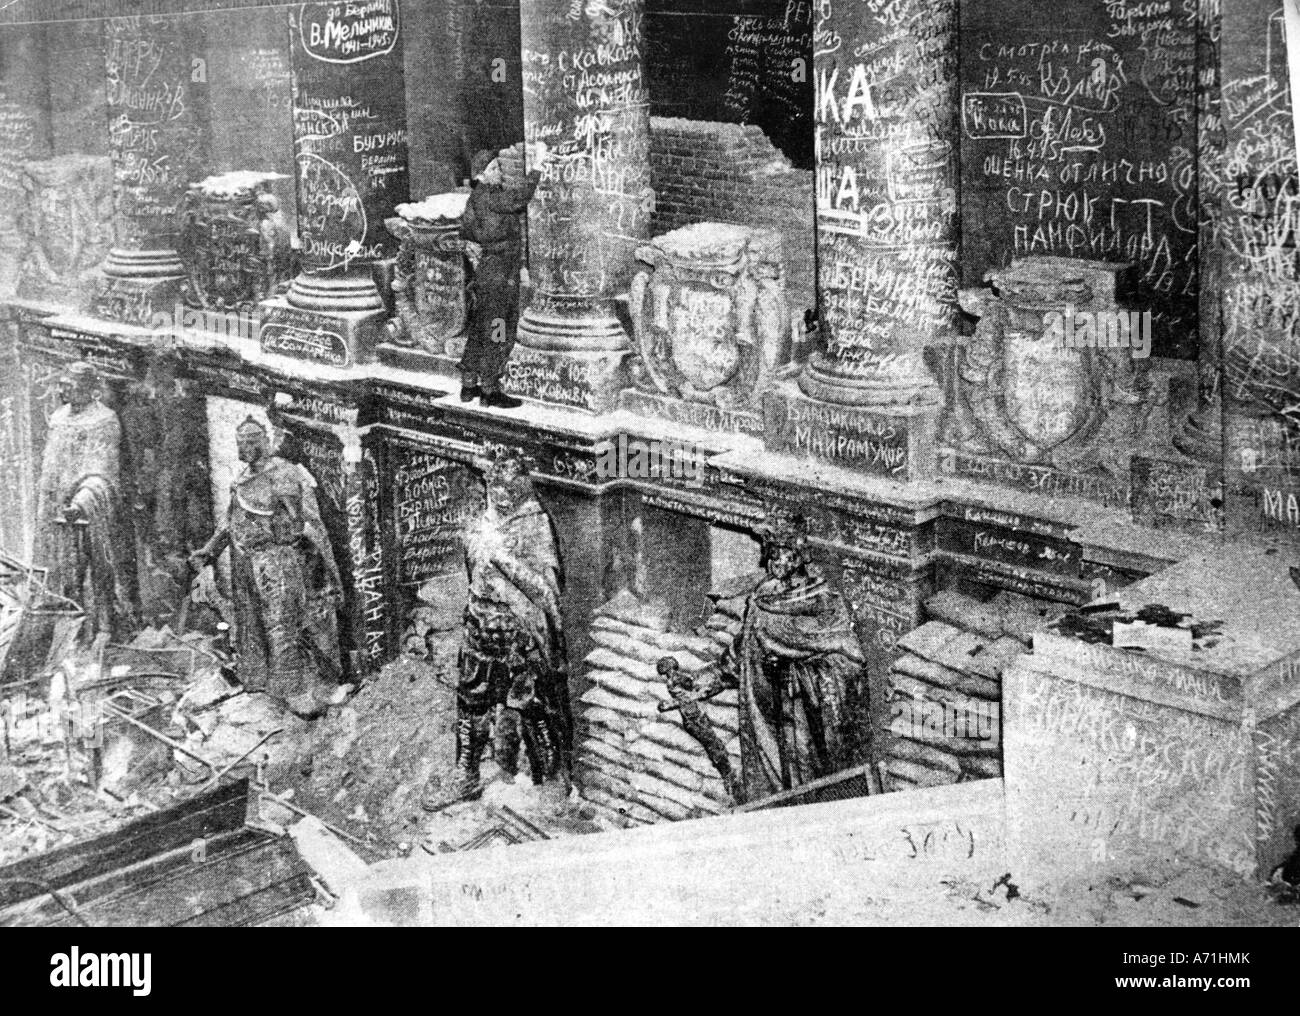 Nachkriegszeit, zerstörte Städte, Berlin, Reichstage, Saal mit Graffiti von sowjetischen Soldaten, britischer Soldat Mitte 1945, Stockfoto